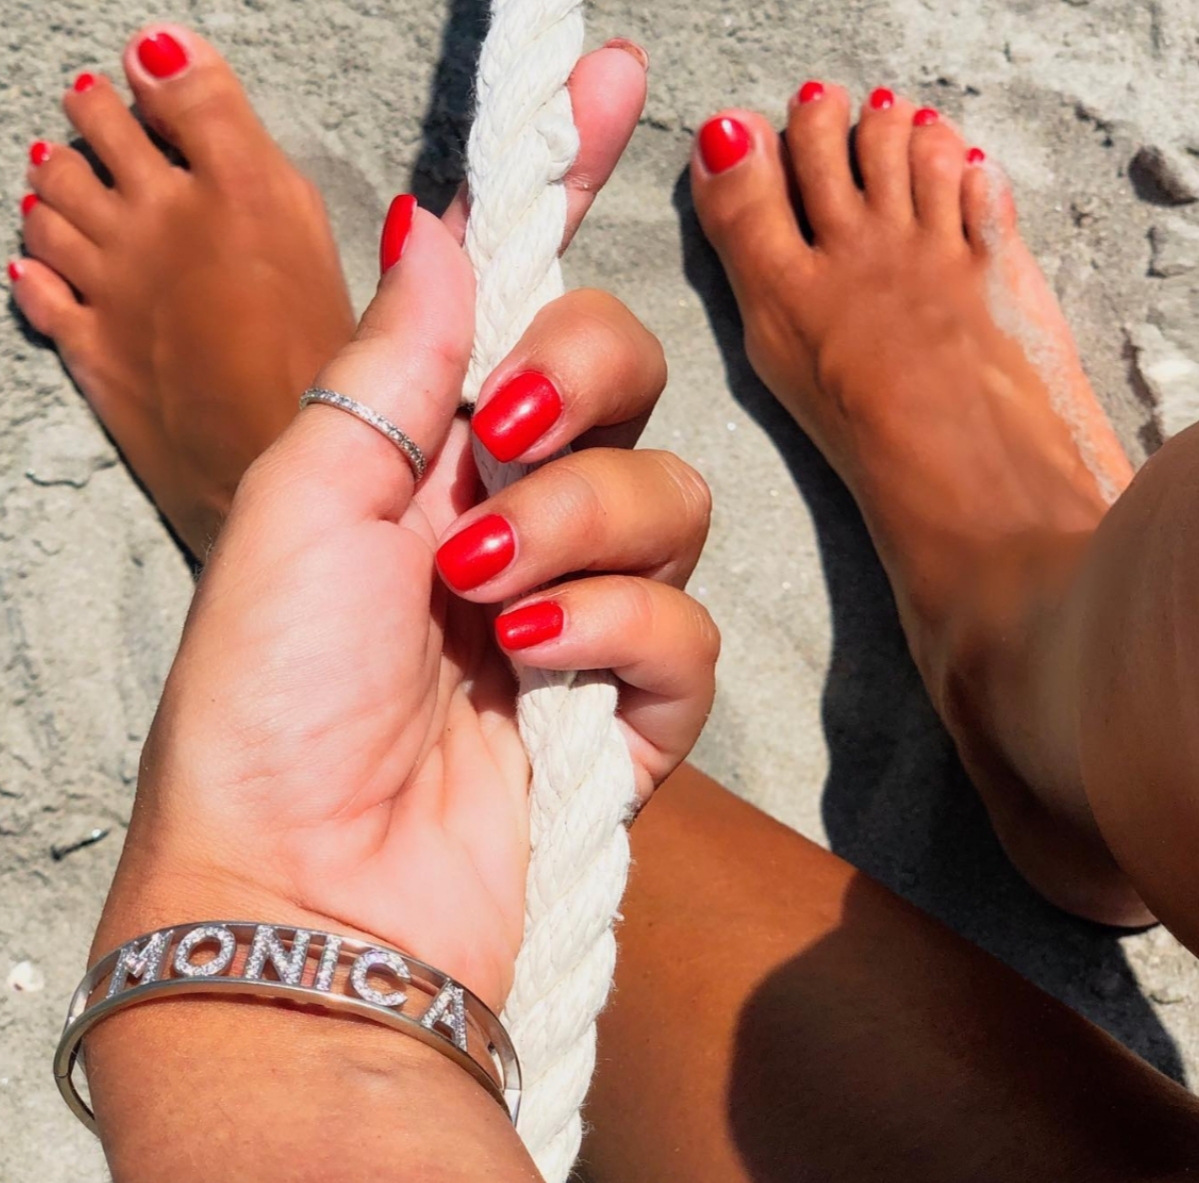 Monica bertini feet